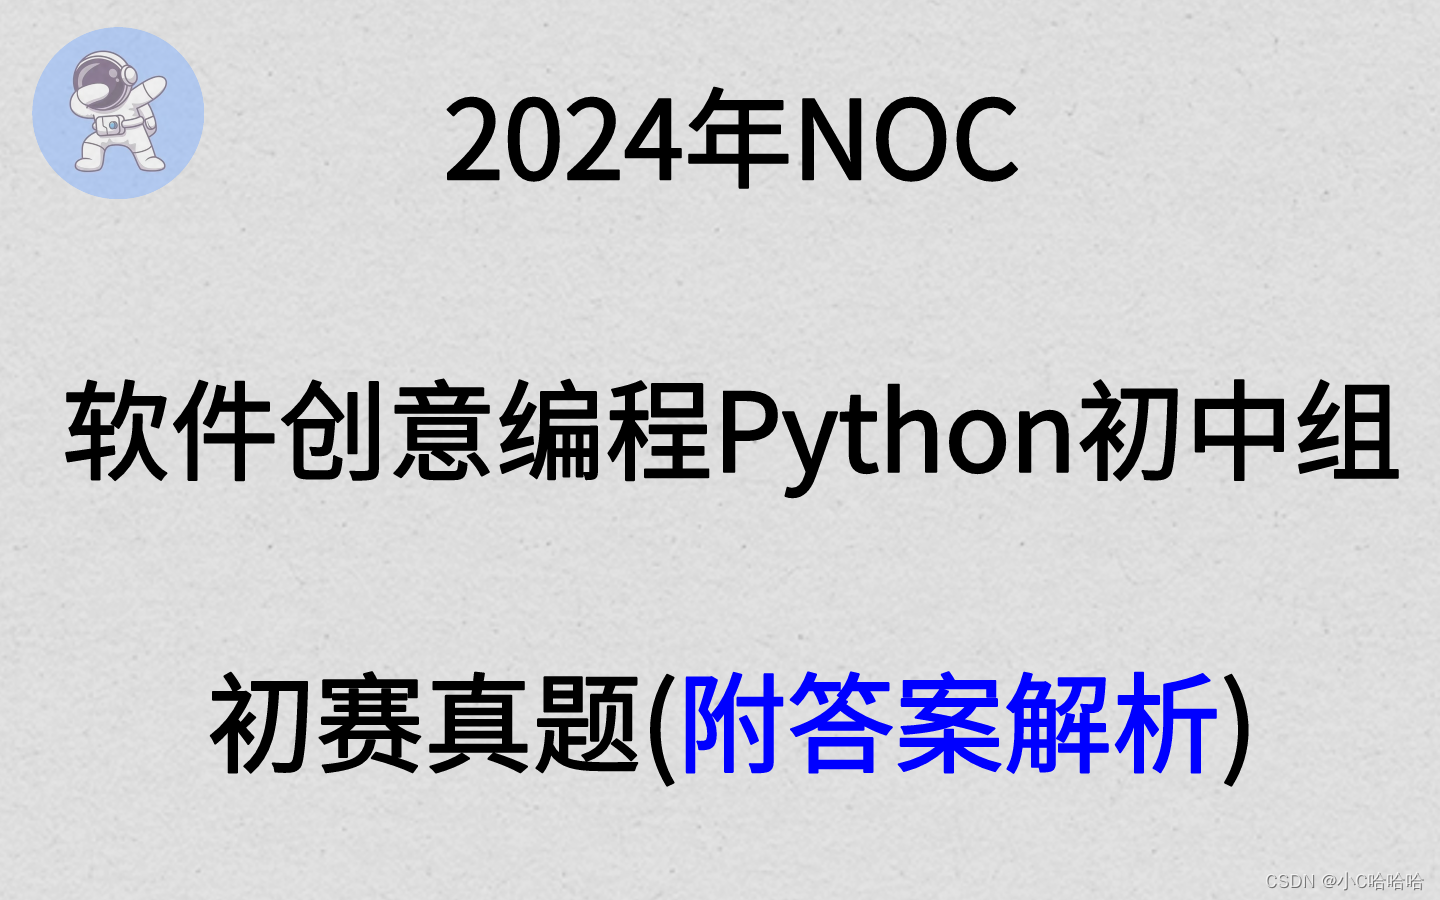 2024年NOC大赛软件创意编程(python初中组初赛)真题